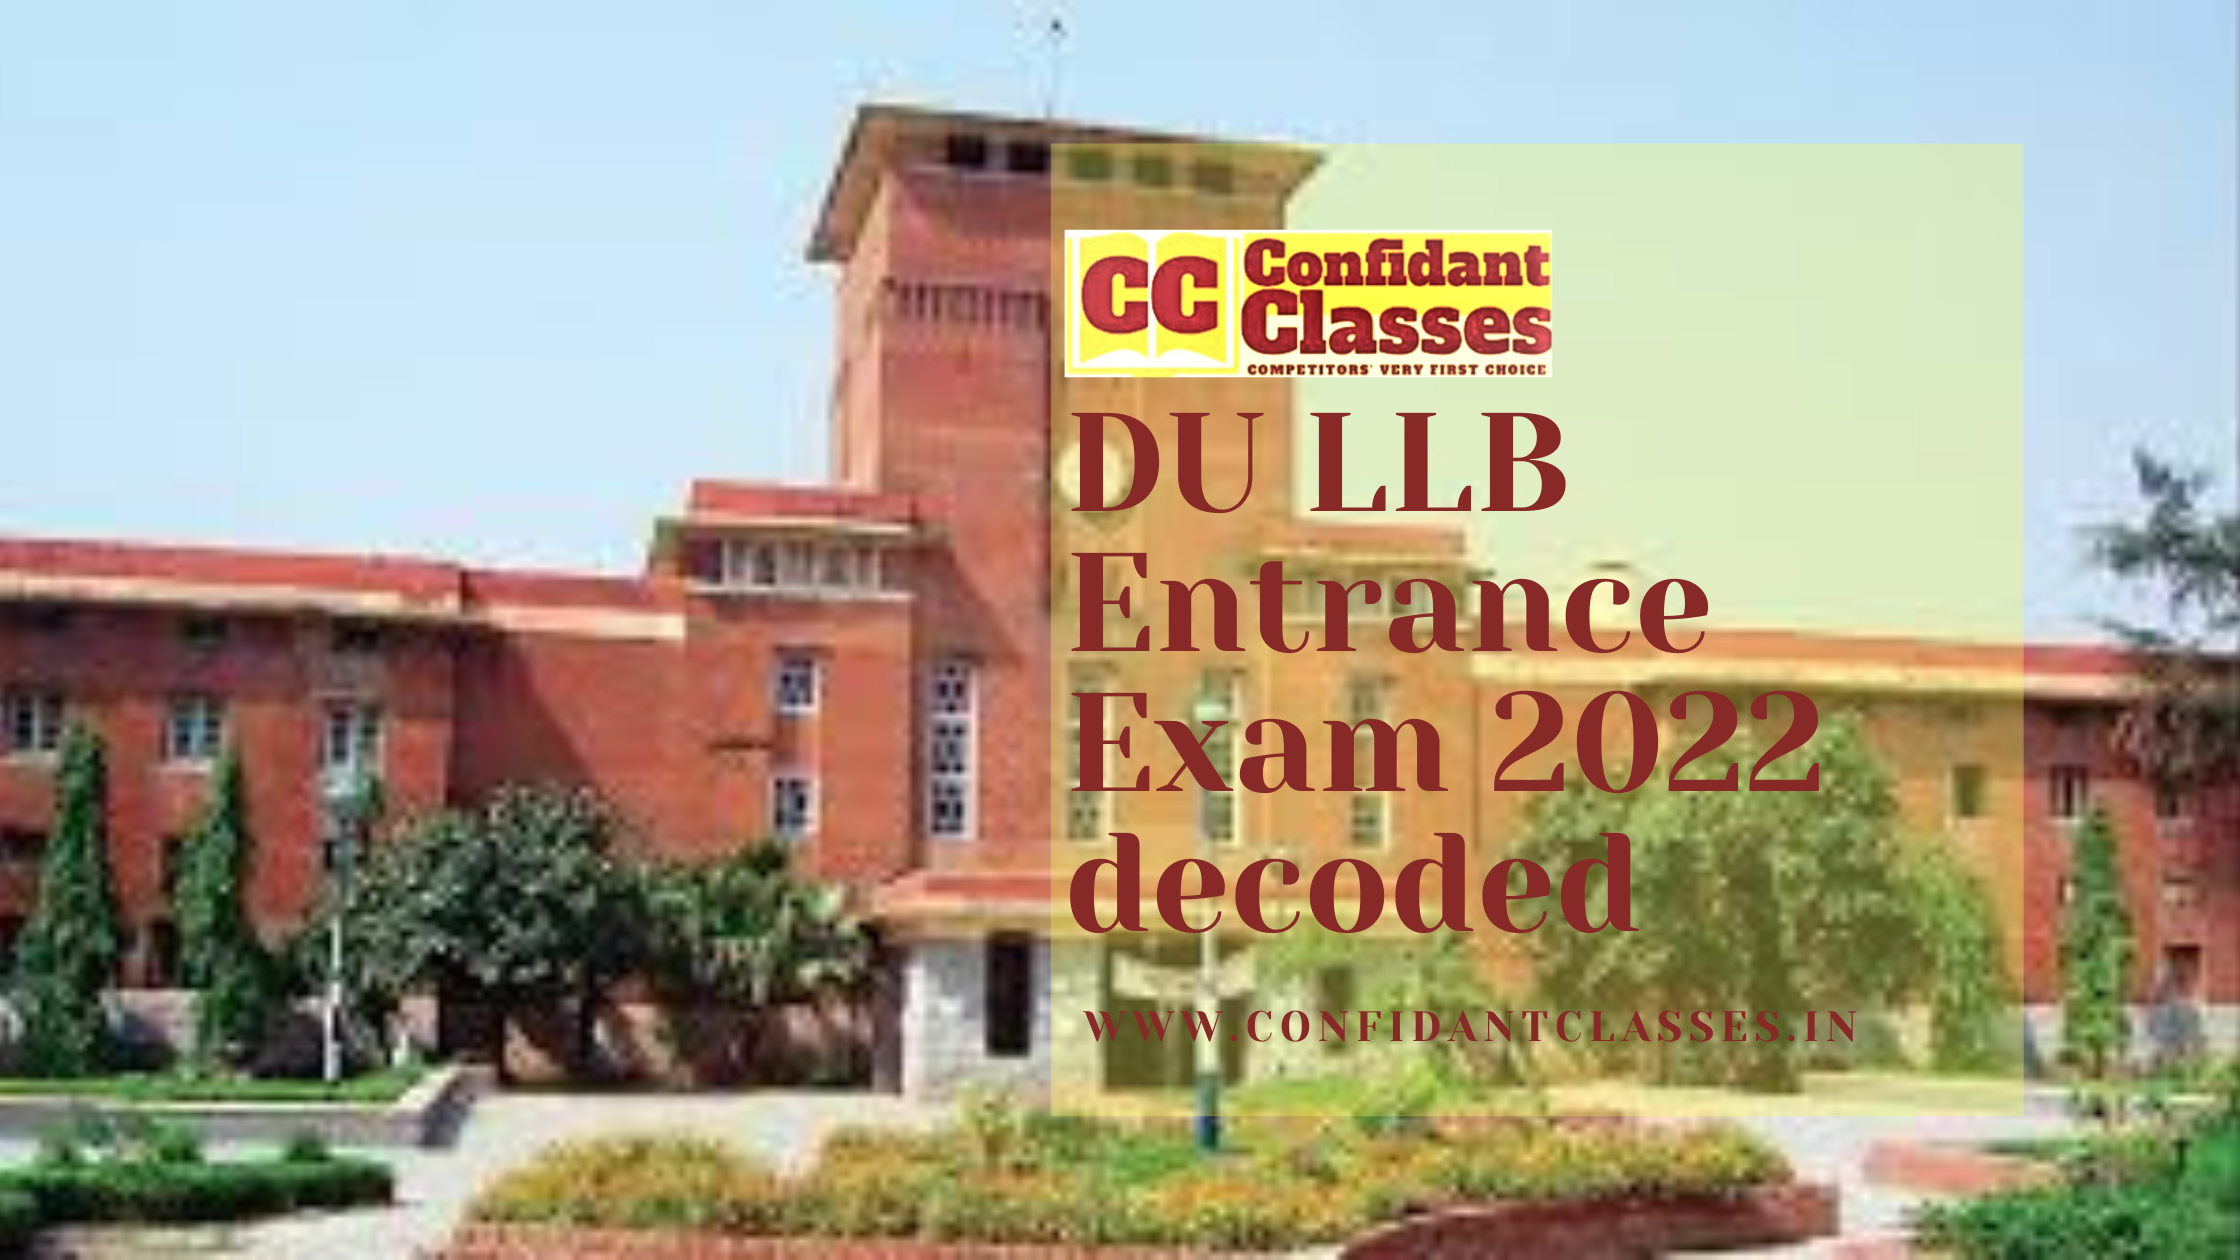 DU LLB Entrance Exam 2022 decoded